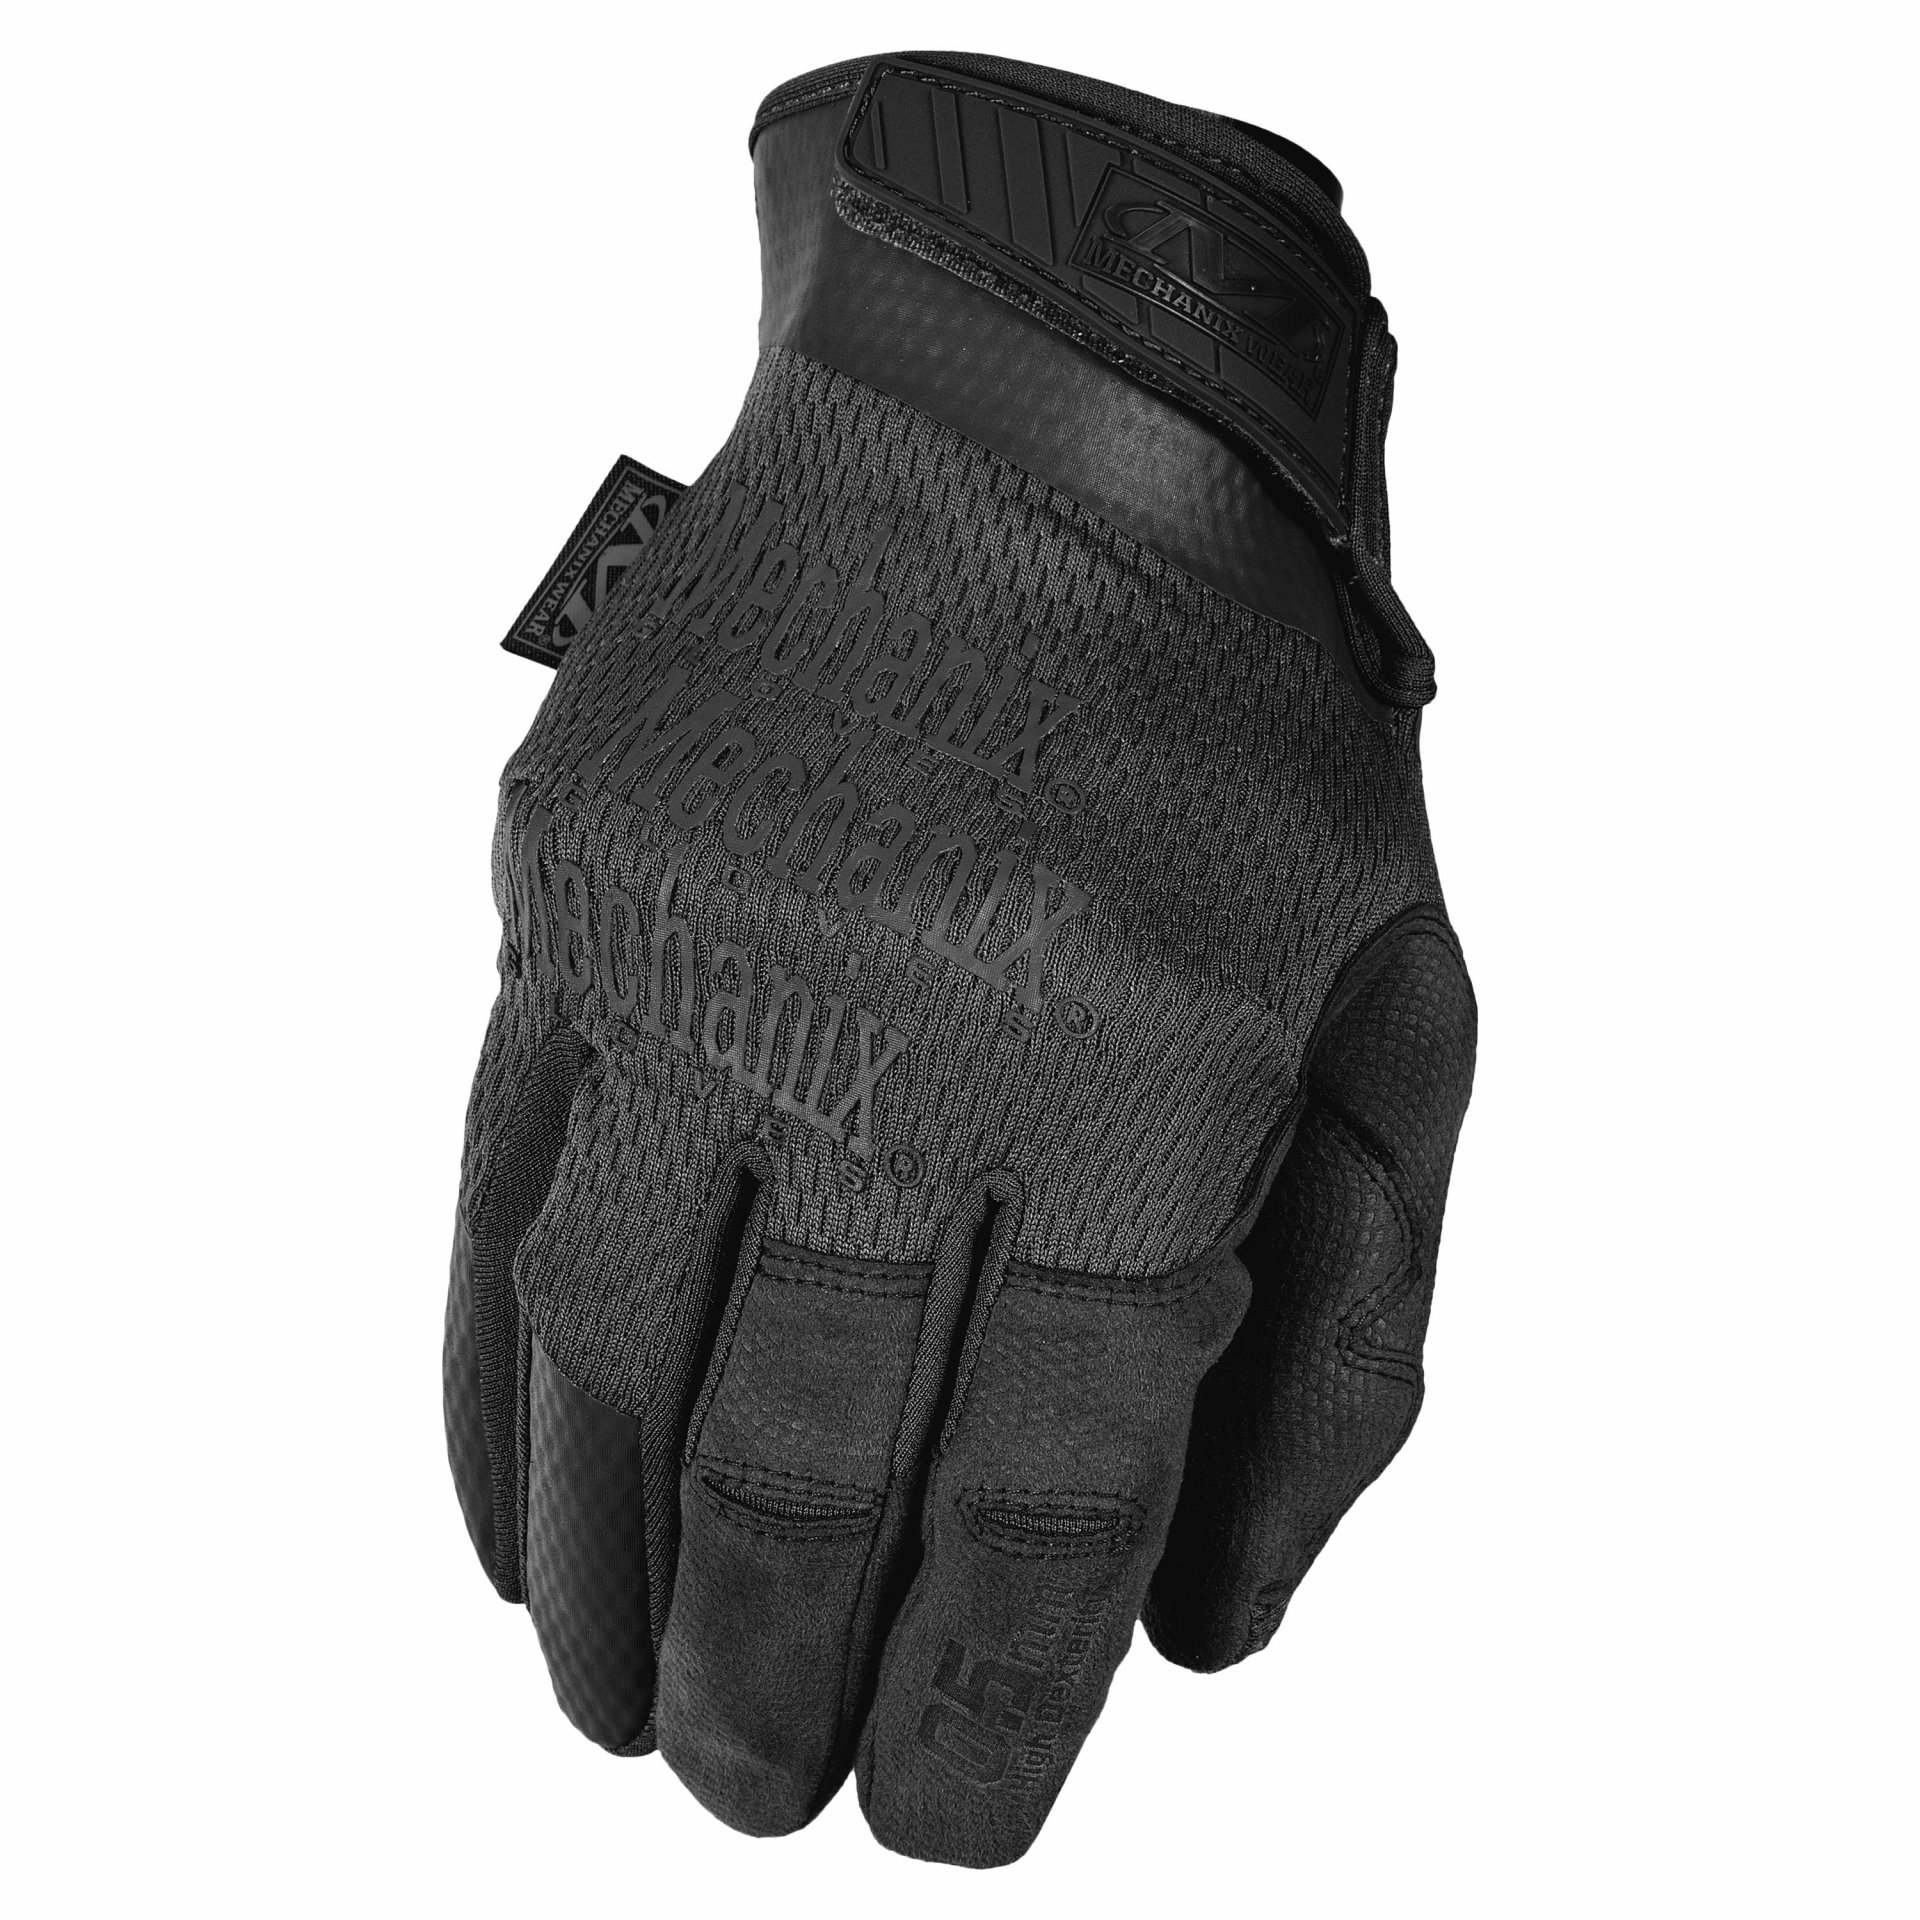 Mechanix Glove 0.5mm (Covert)